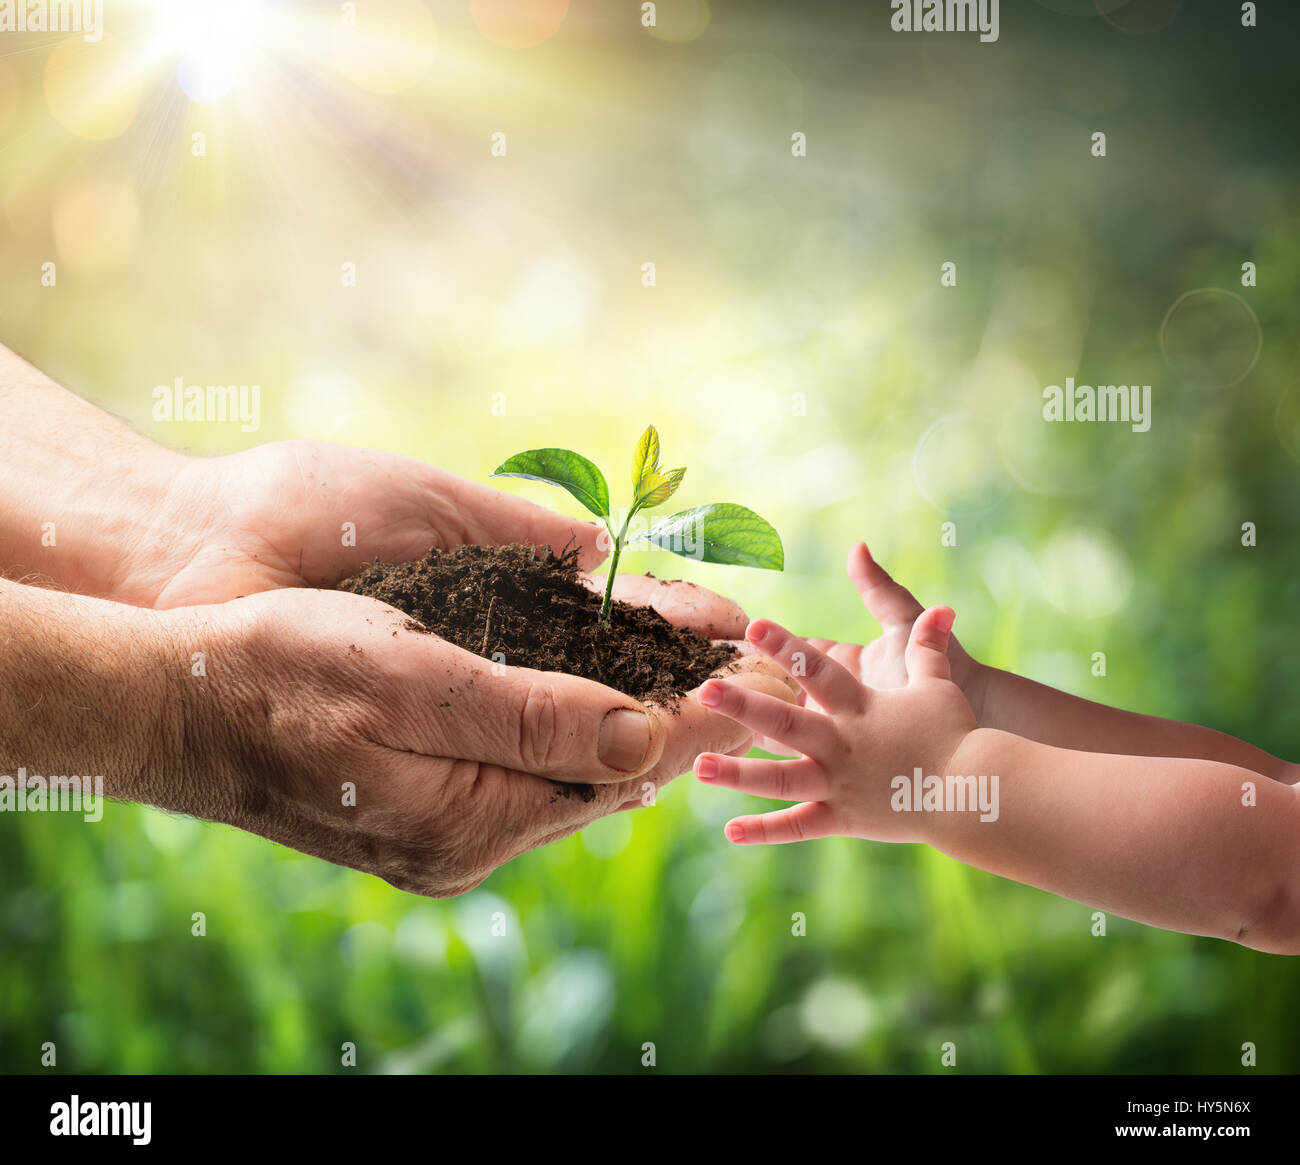 Alter Mann und junge Pflanze zu einem Kind - Umweltschutz für die neue Generation Stockfoto